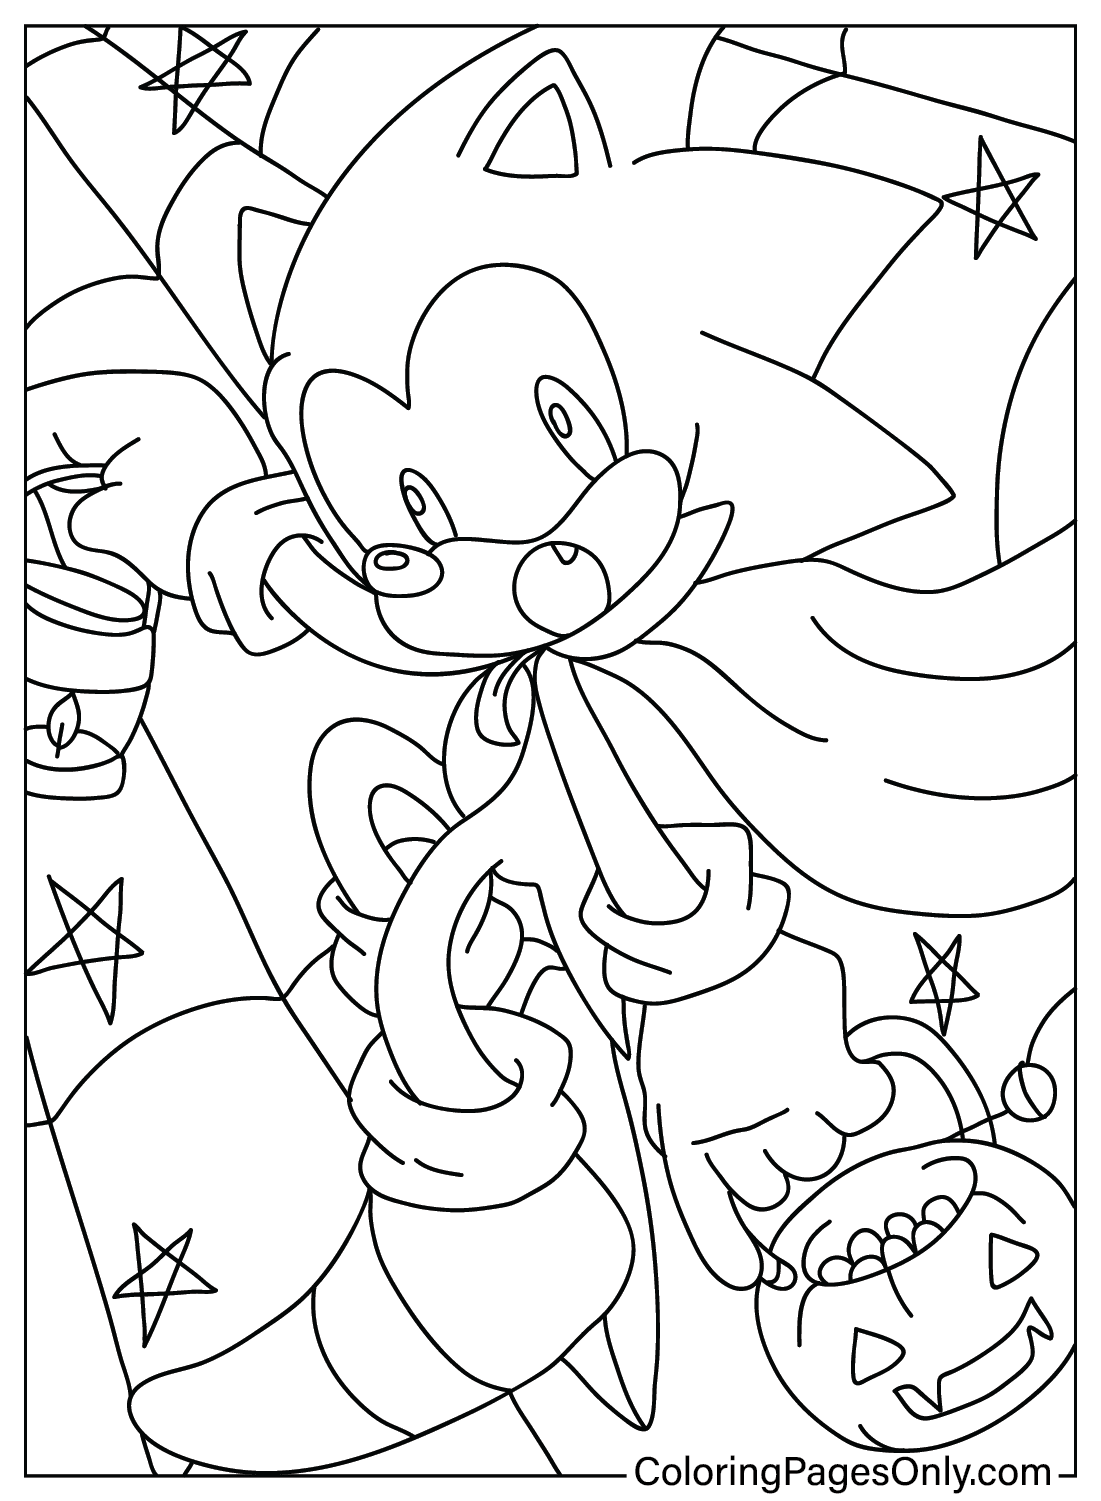 Página para colorear de Sonic Halloween gratis de Sonic Halloween